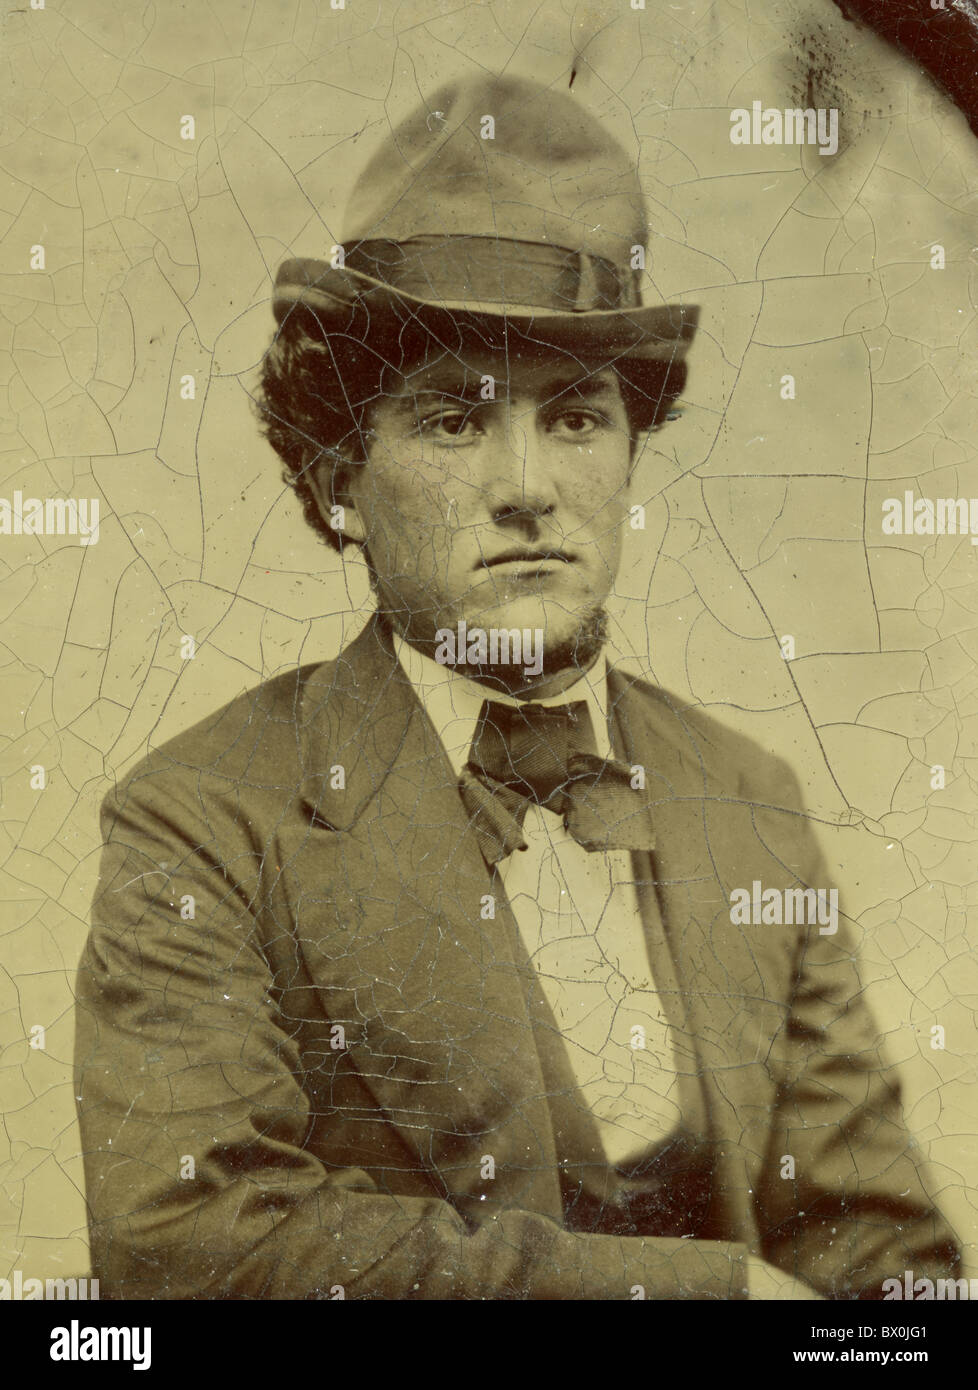 Mann mit Hipster Hut Jacke Vintage 1870s 1880s geknackt Krawatte Schleife schwarz / weiß Zinn Art Foto Mode Filz Hut Kopf tragen Stockfoto